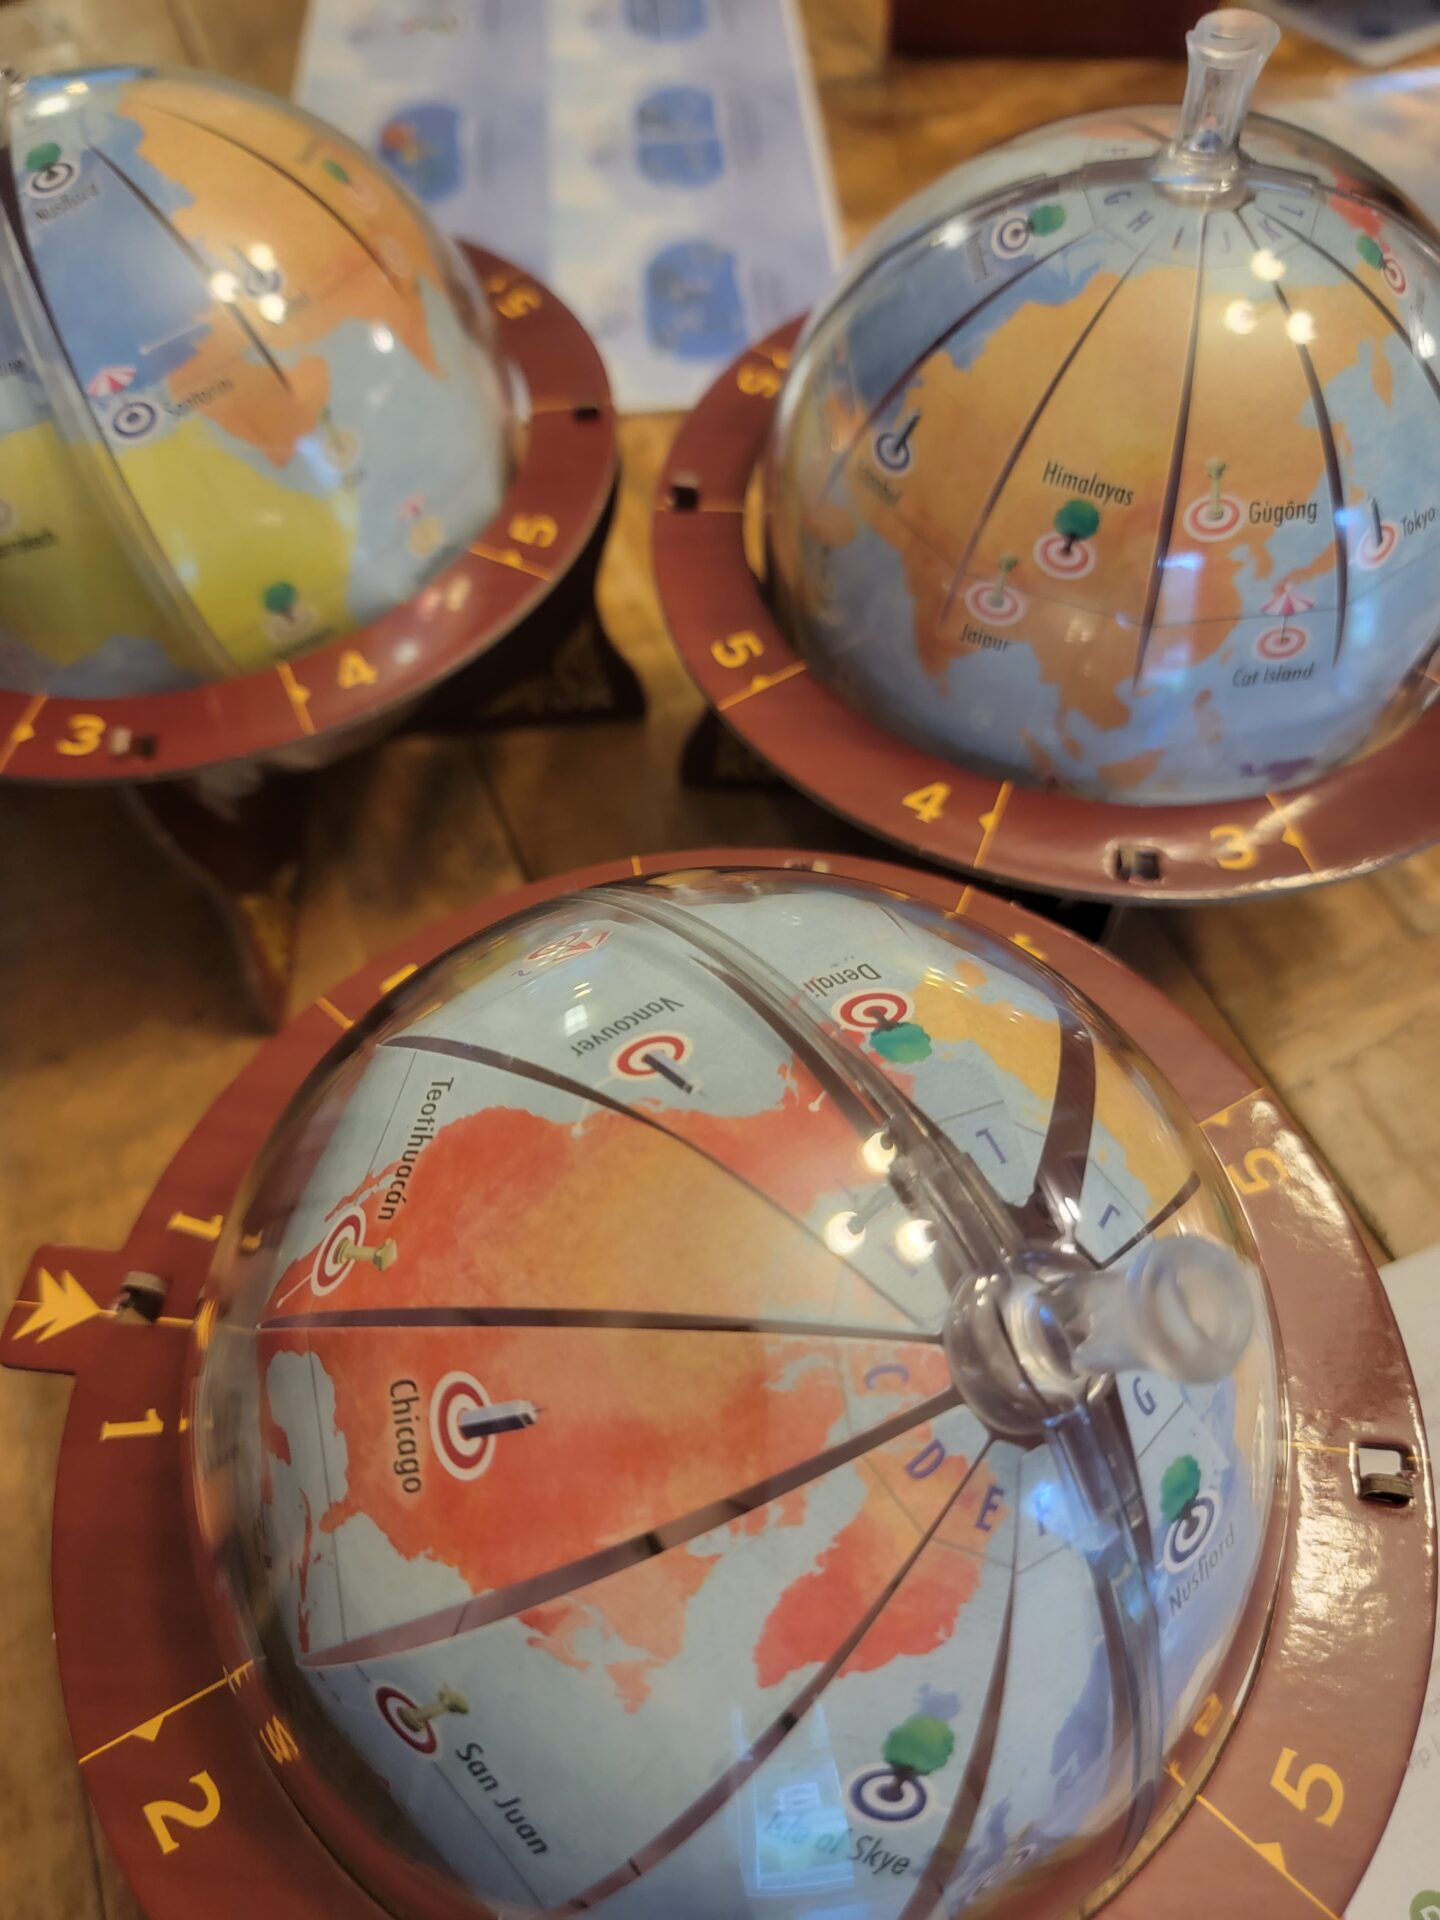 Globetrotting board game globes.